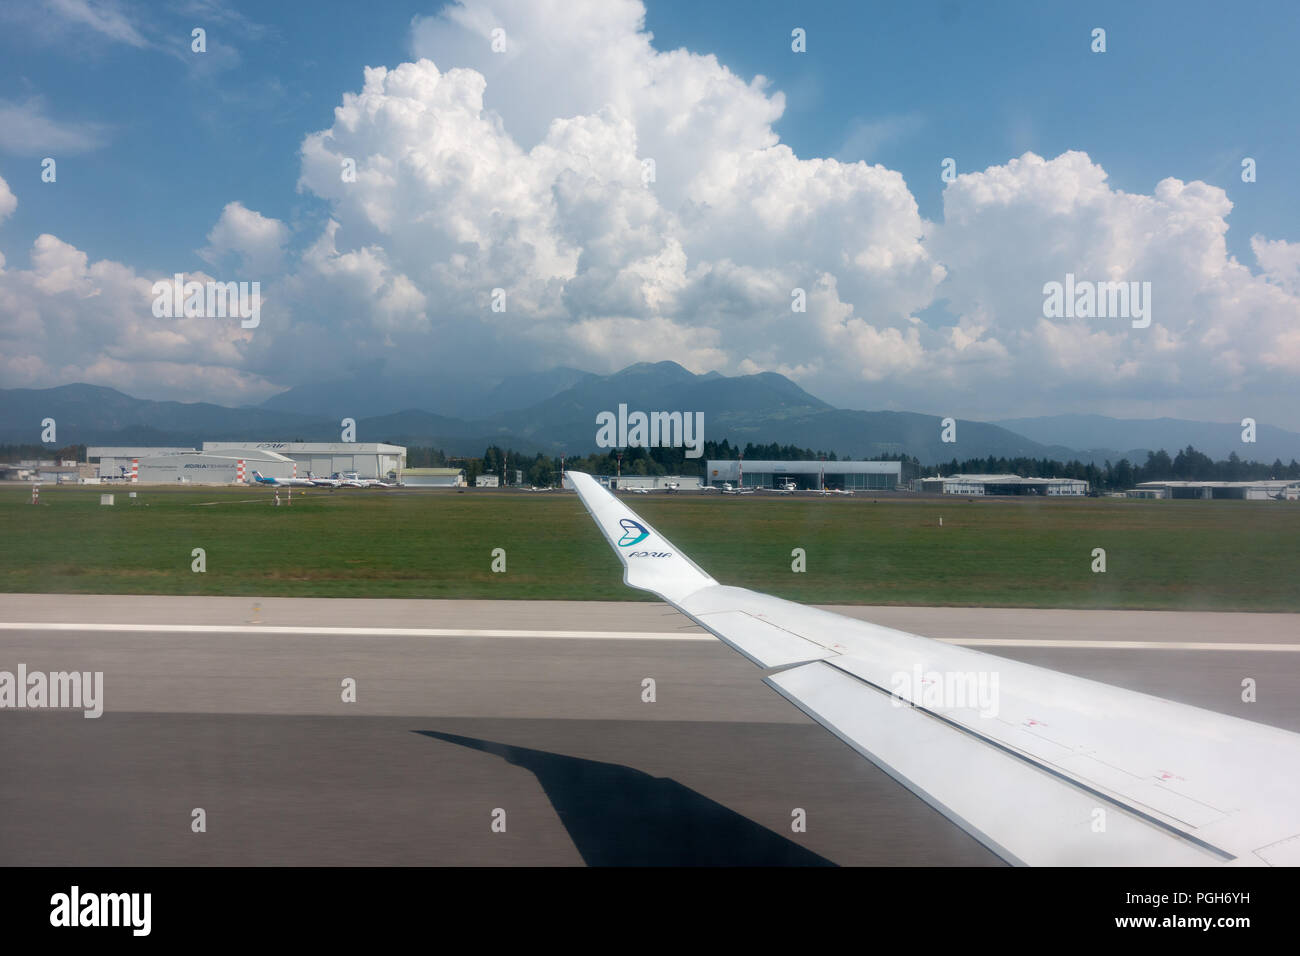 Ljubljana, Slovénie - 25 août 2018 : voir à travers la fenêtre de l'avion sur l'aile d'avion, Adria Airways logo sur l'extrémité de l'aile et Ljubljana Joze Pucnik airpo Banque D'Images